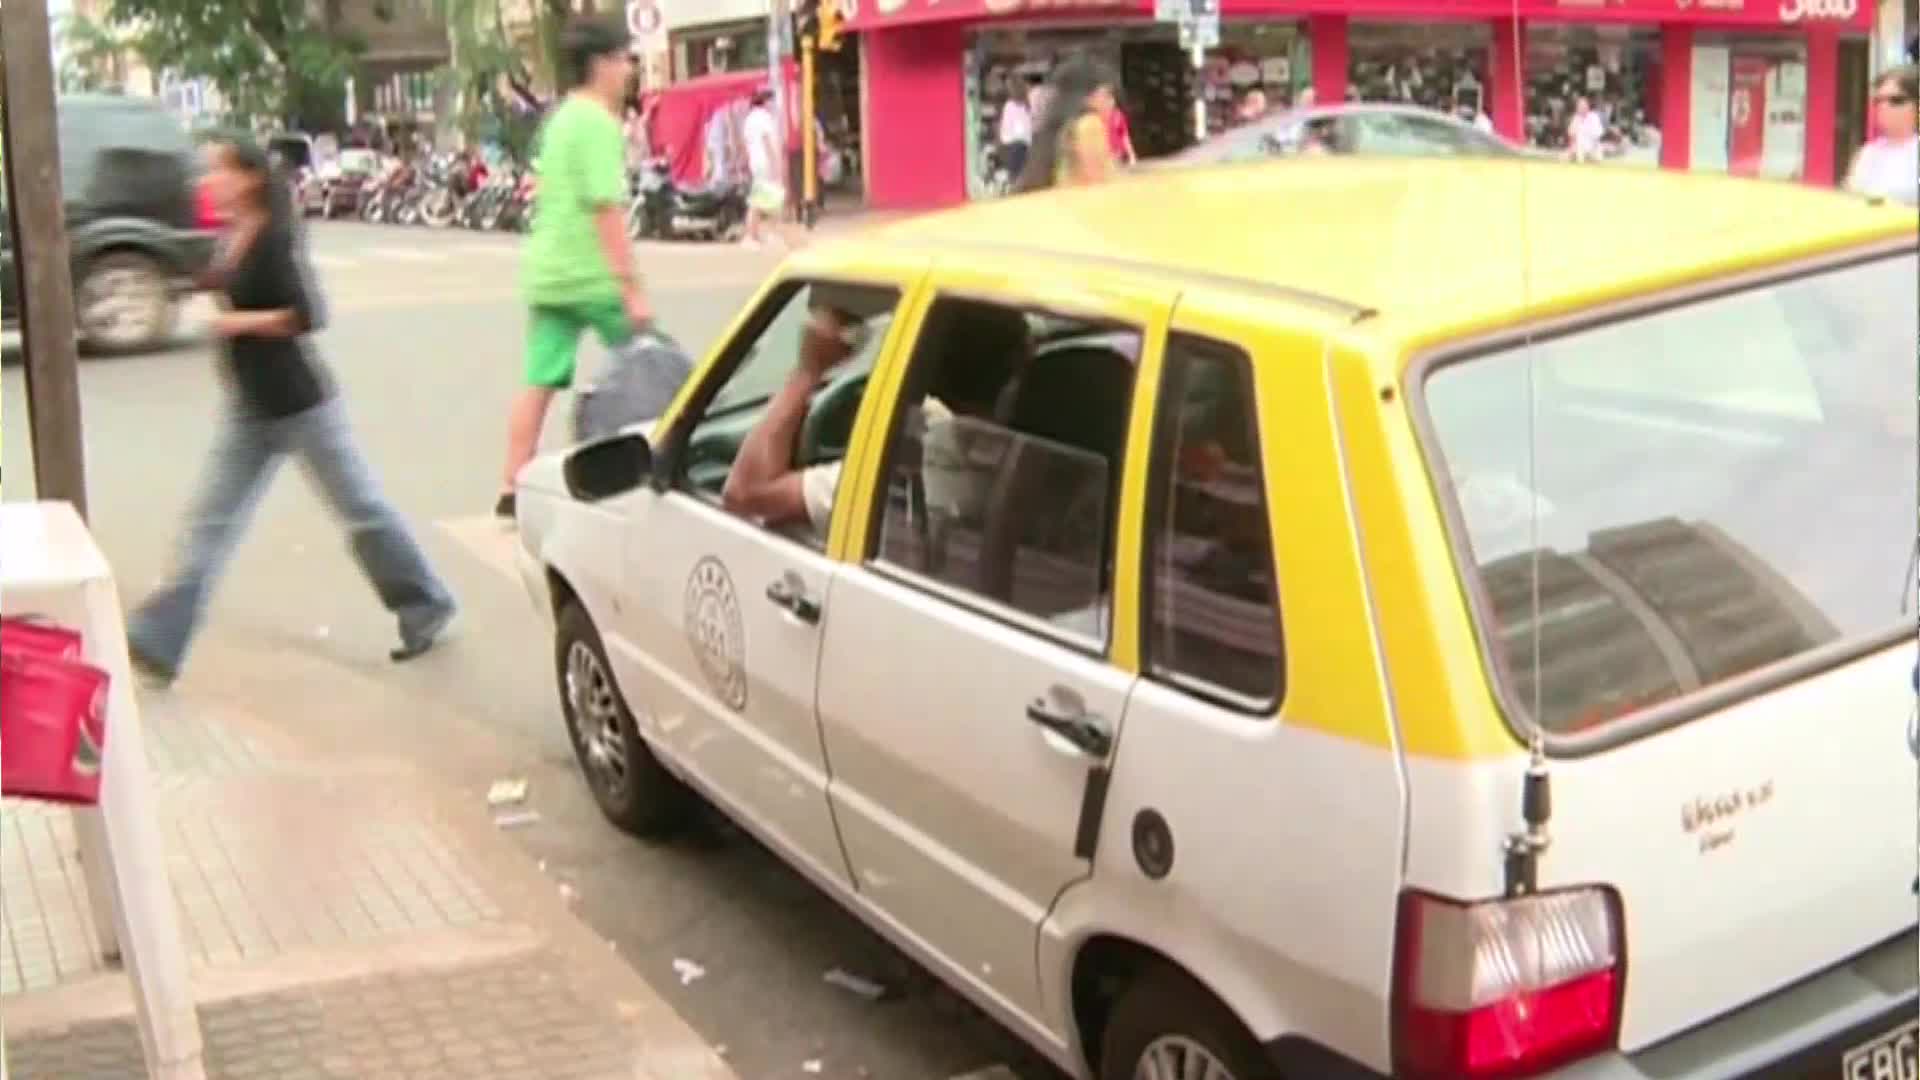 La tarifa de taxis en Posadas costará $ 30 la bajada de bandera